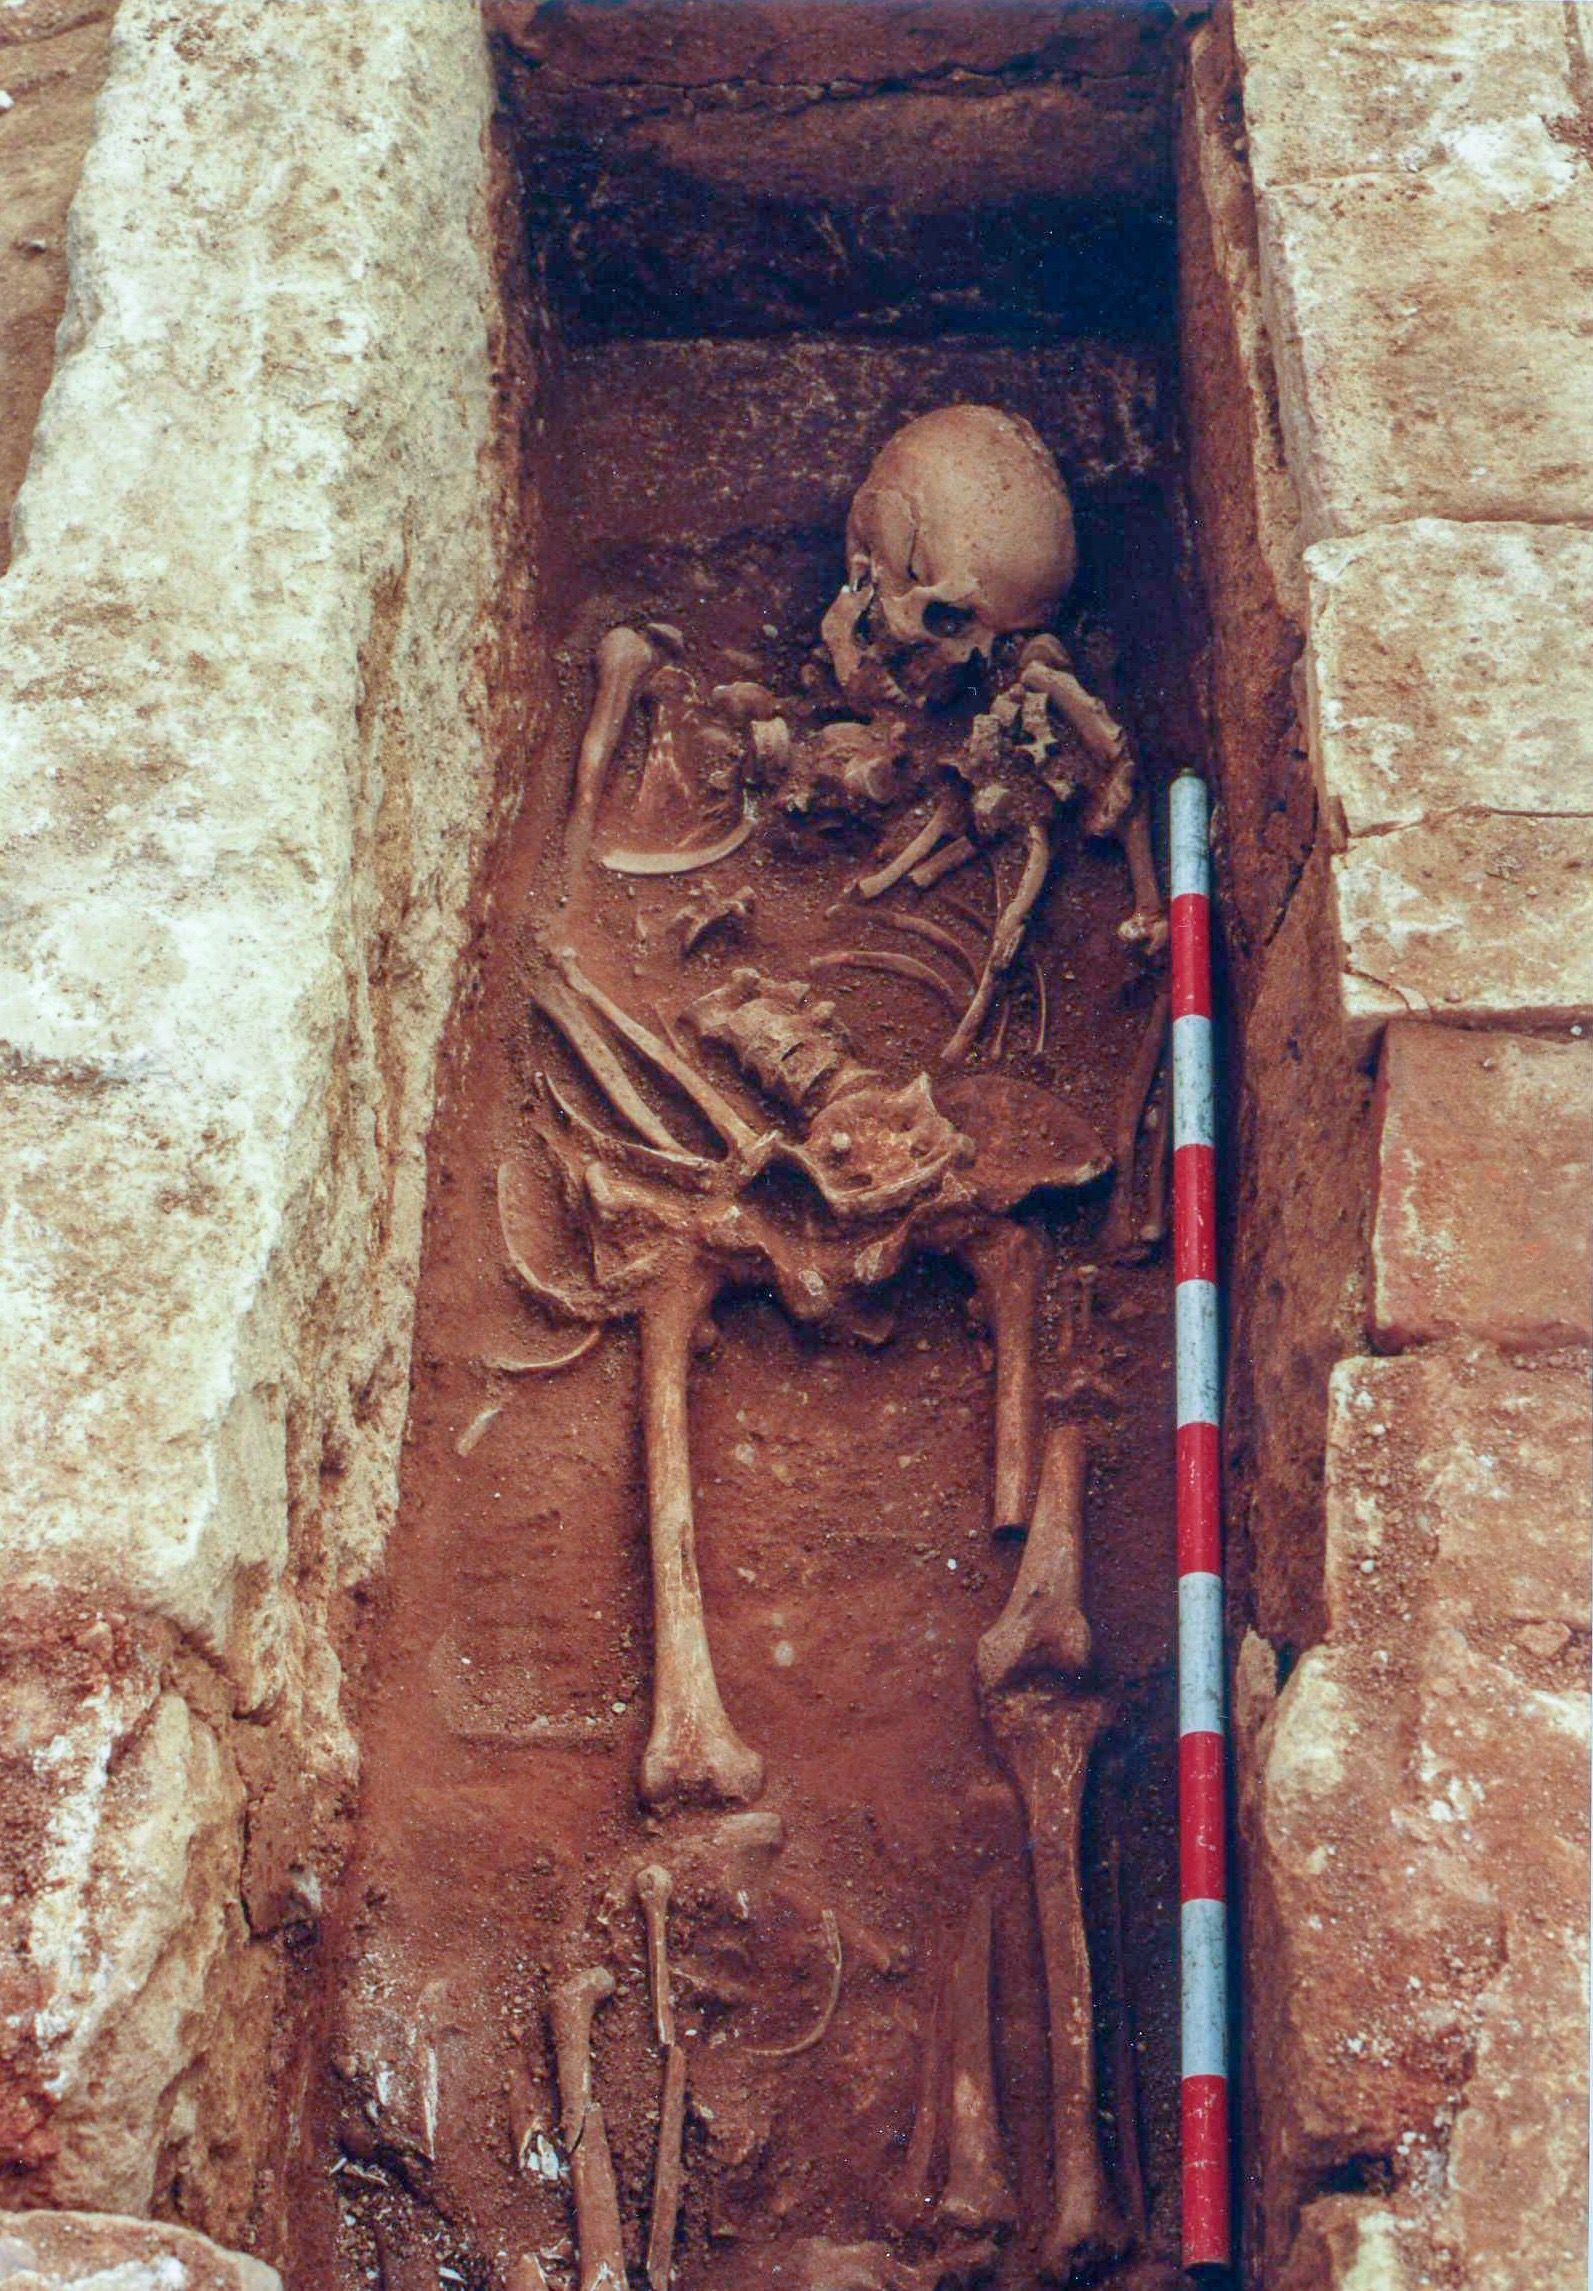 Esqueleto de un cristiano enterrado en Cercadilla que vivió durante el emirato (756-929)  y que recibió un gran hachazo en la cabeza.